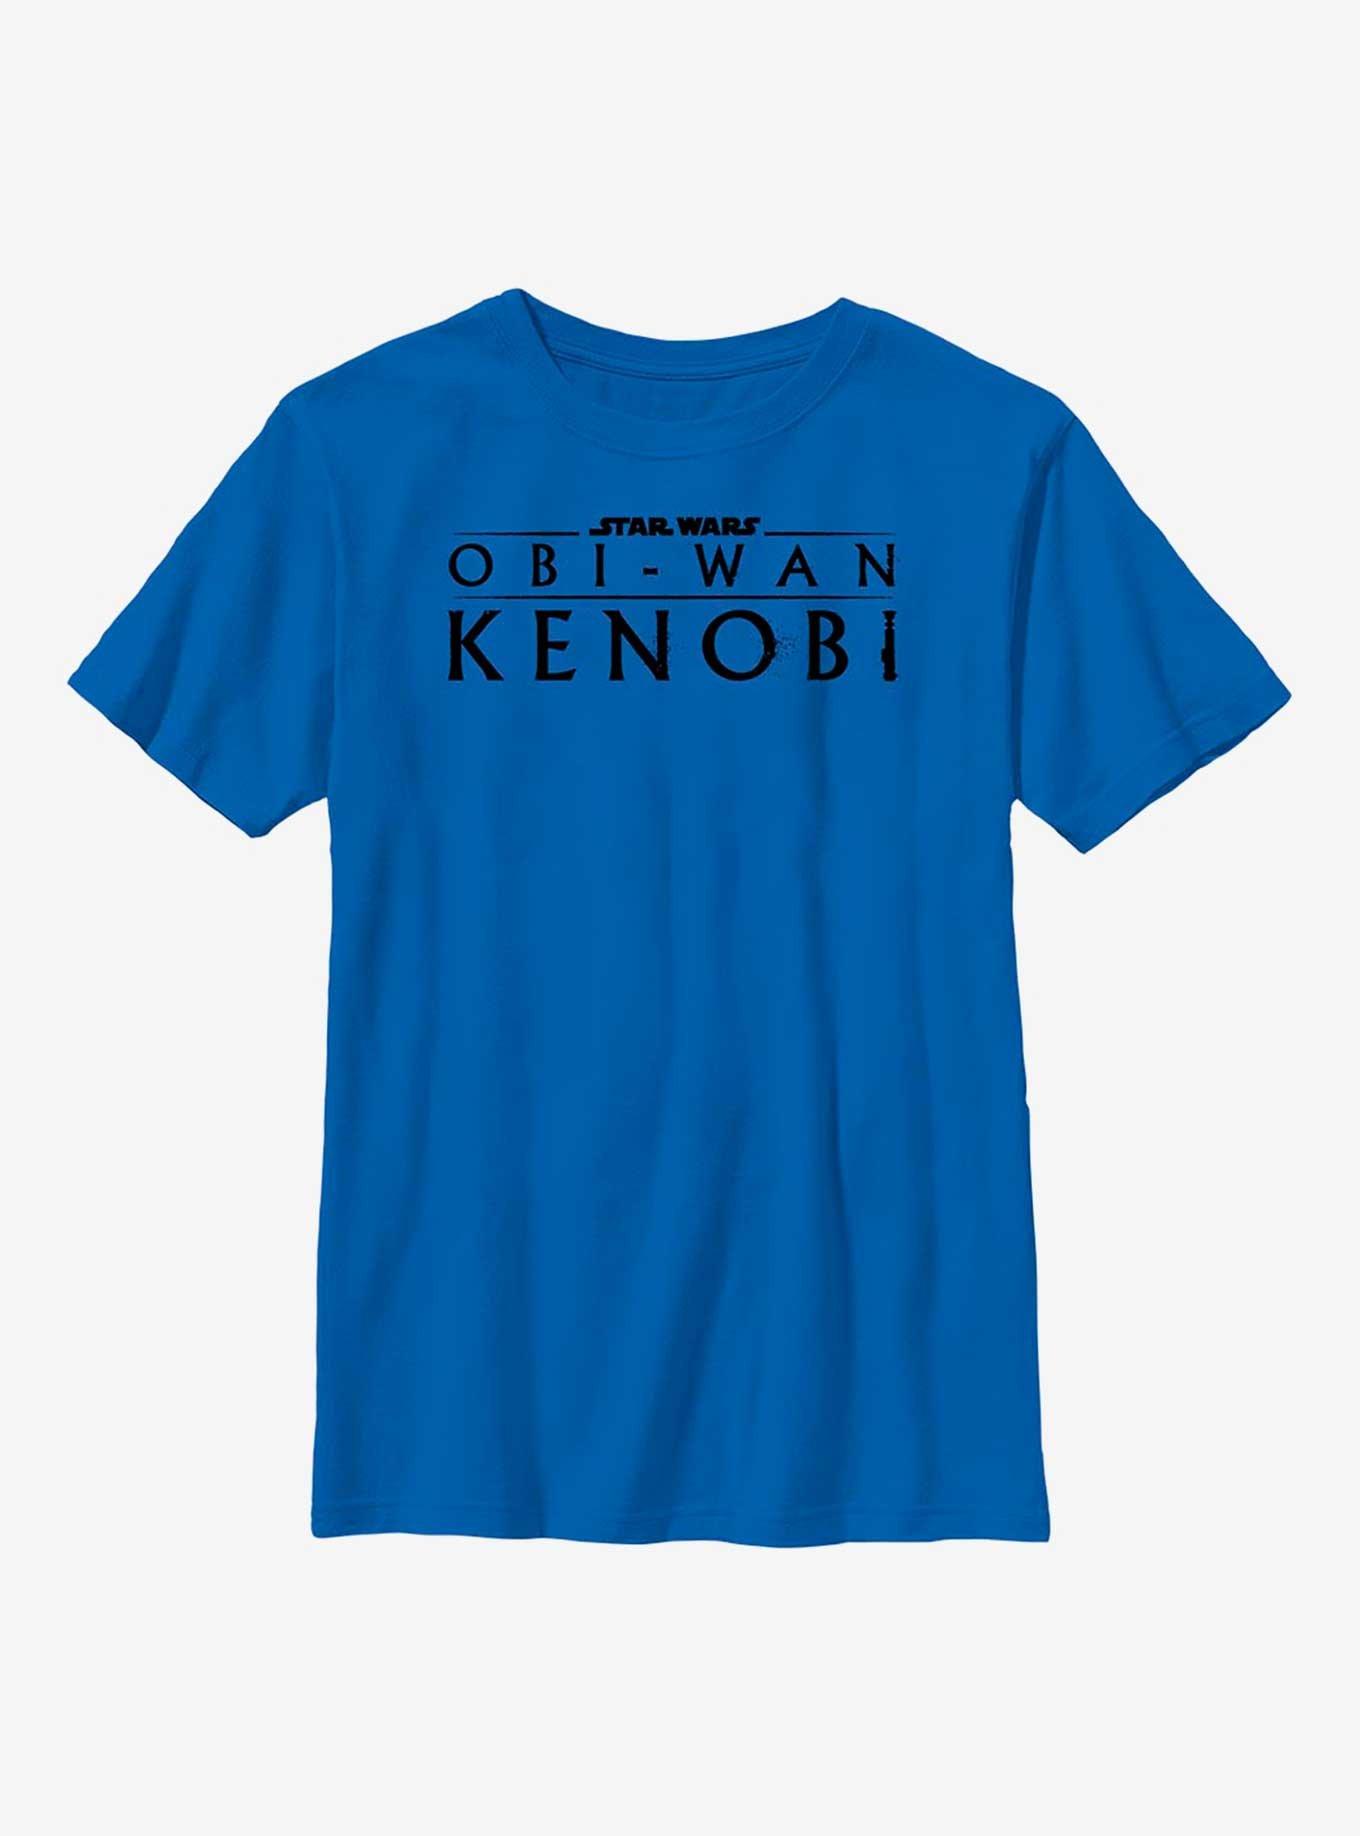 Star Wars Obi-Wan Kenobi Logo Weathered Youth T-Shirt, ROYAL, hi-res